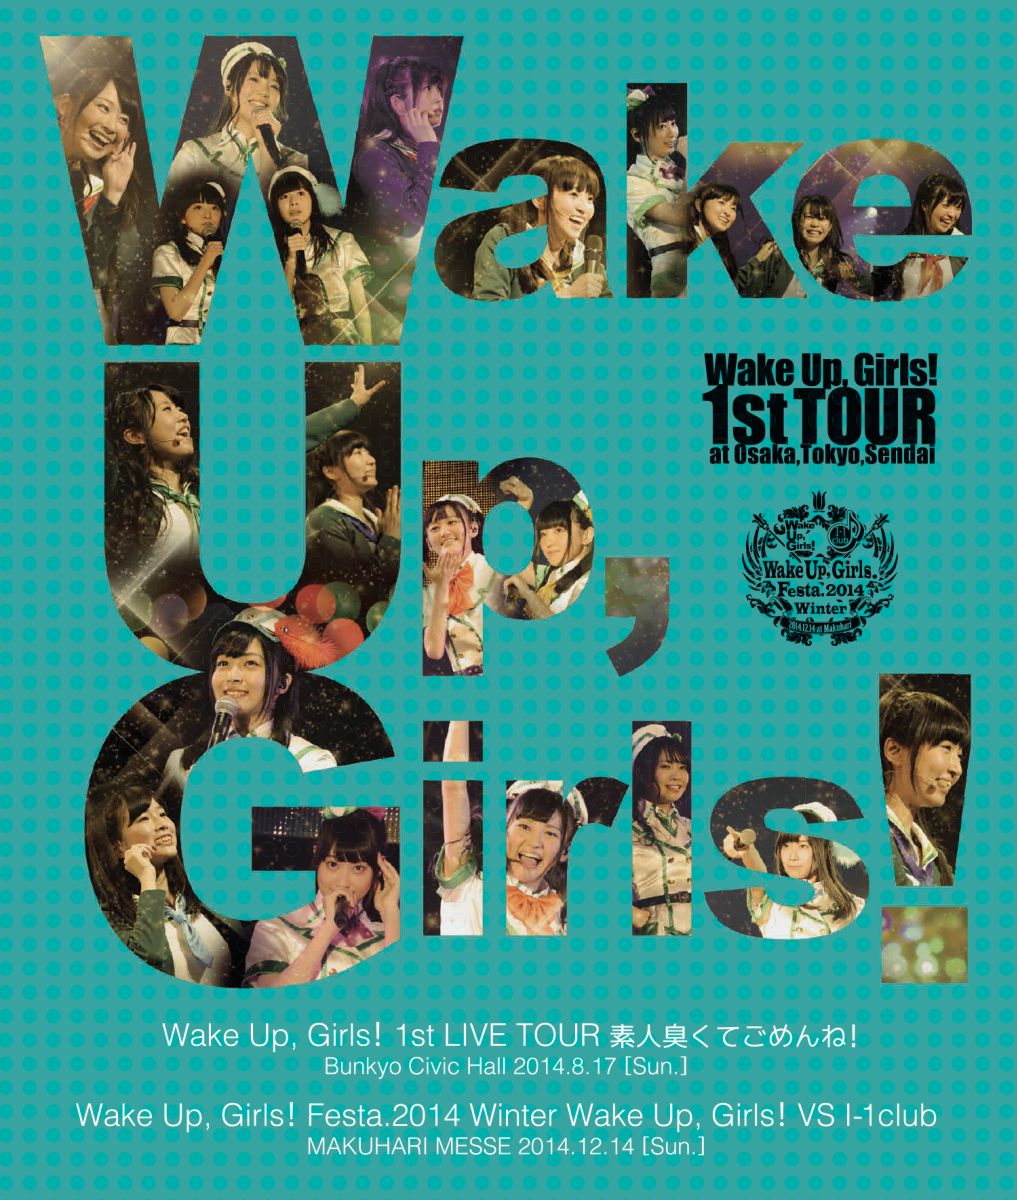 【特典なし】Wake Up, Girls! 1st LIVE TOUR 素人臭くてごめんね。/Wake Up, Girls!VS I-1club【Blu-ray】 [ (V.A.) ]